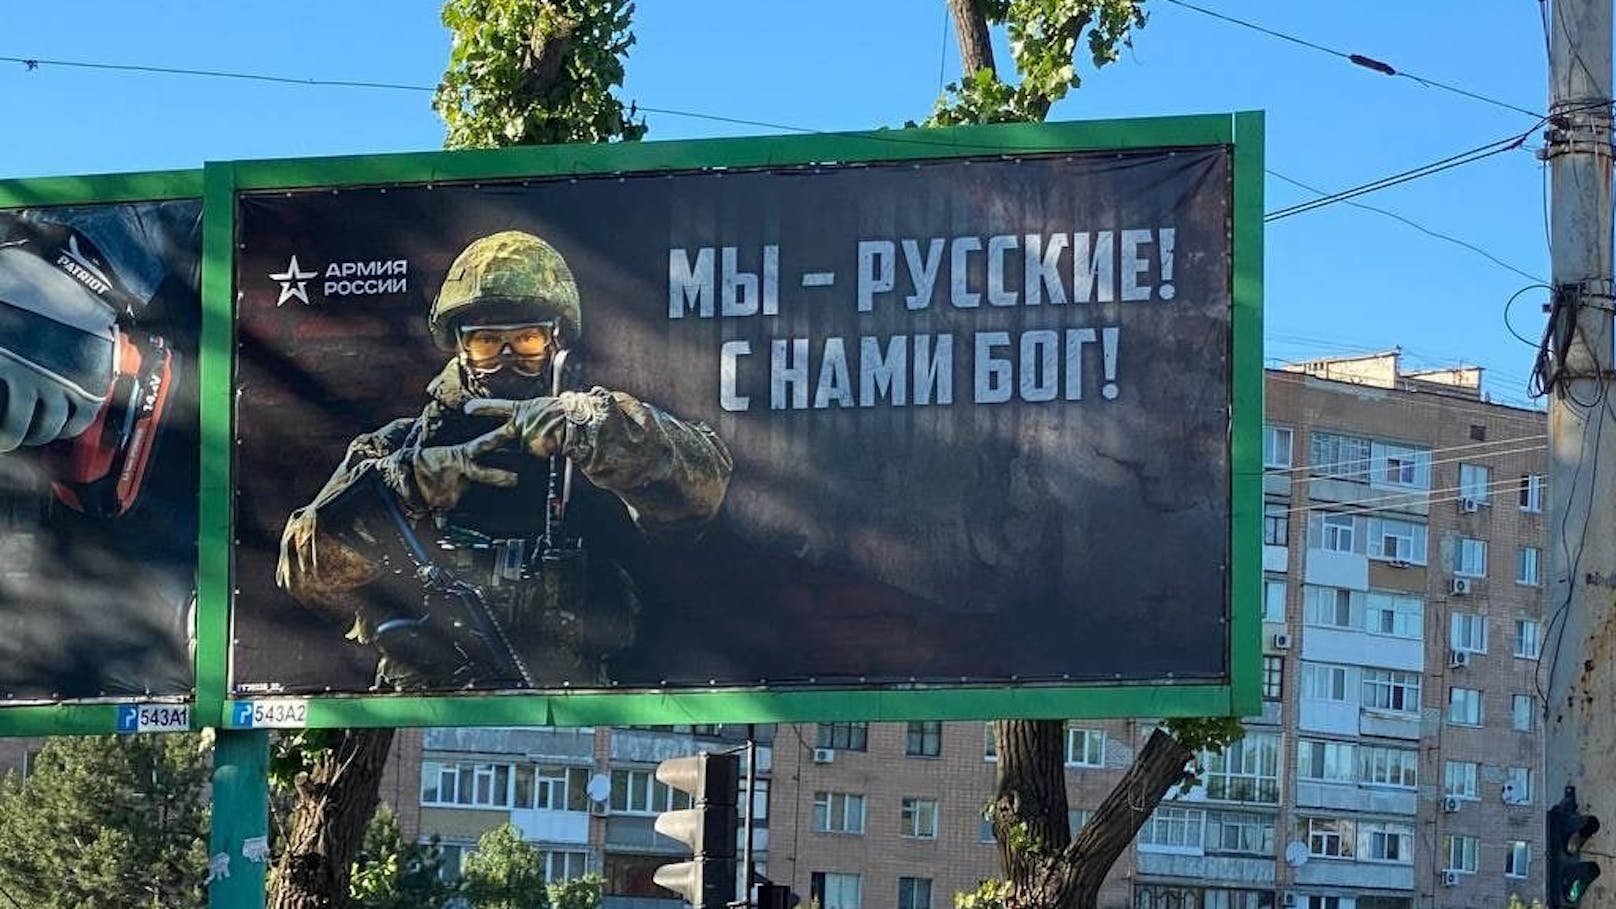 Russische Propaganda-Plakate in Luhansk: "Wir sind Russen! Gott ist mit uns!"